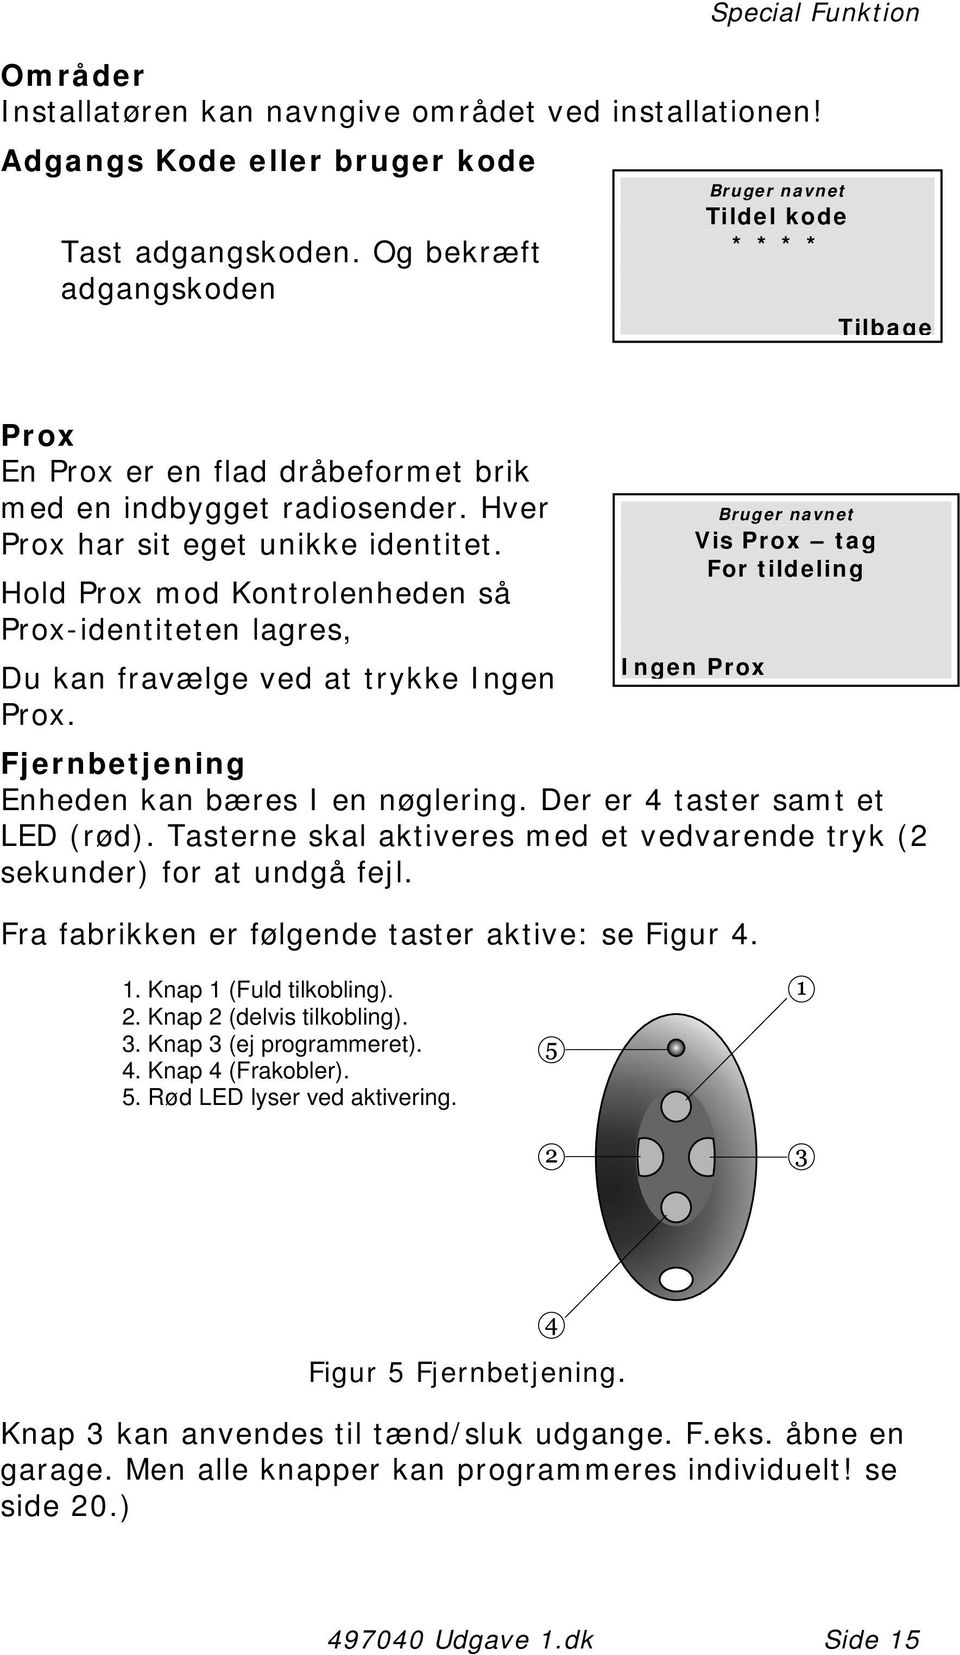 Hold Prox mod Kontrolenheden så Prox-identiteten lagres, Du kan fravælge ved at trykke Ingen Prox. Fjernbetjening Enheden kan bæres I en nøglering. Der er 4 taster samt et LED (rød).